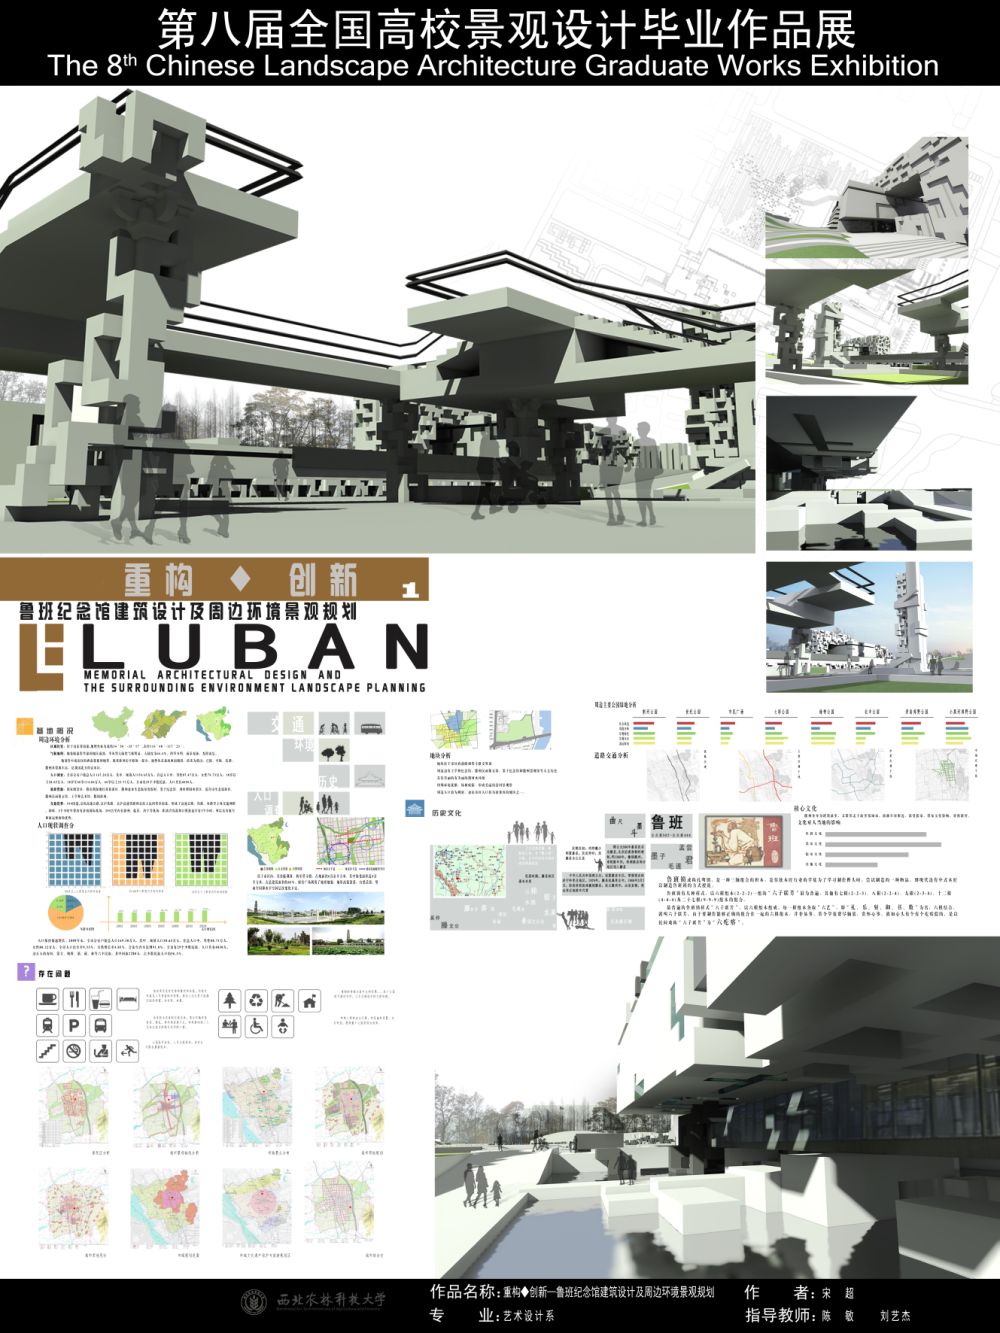 重构◆创新—鲁班纪念馆建筑设计及周边环境景观规划-1